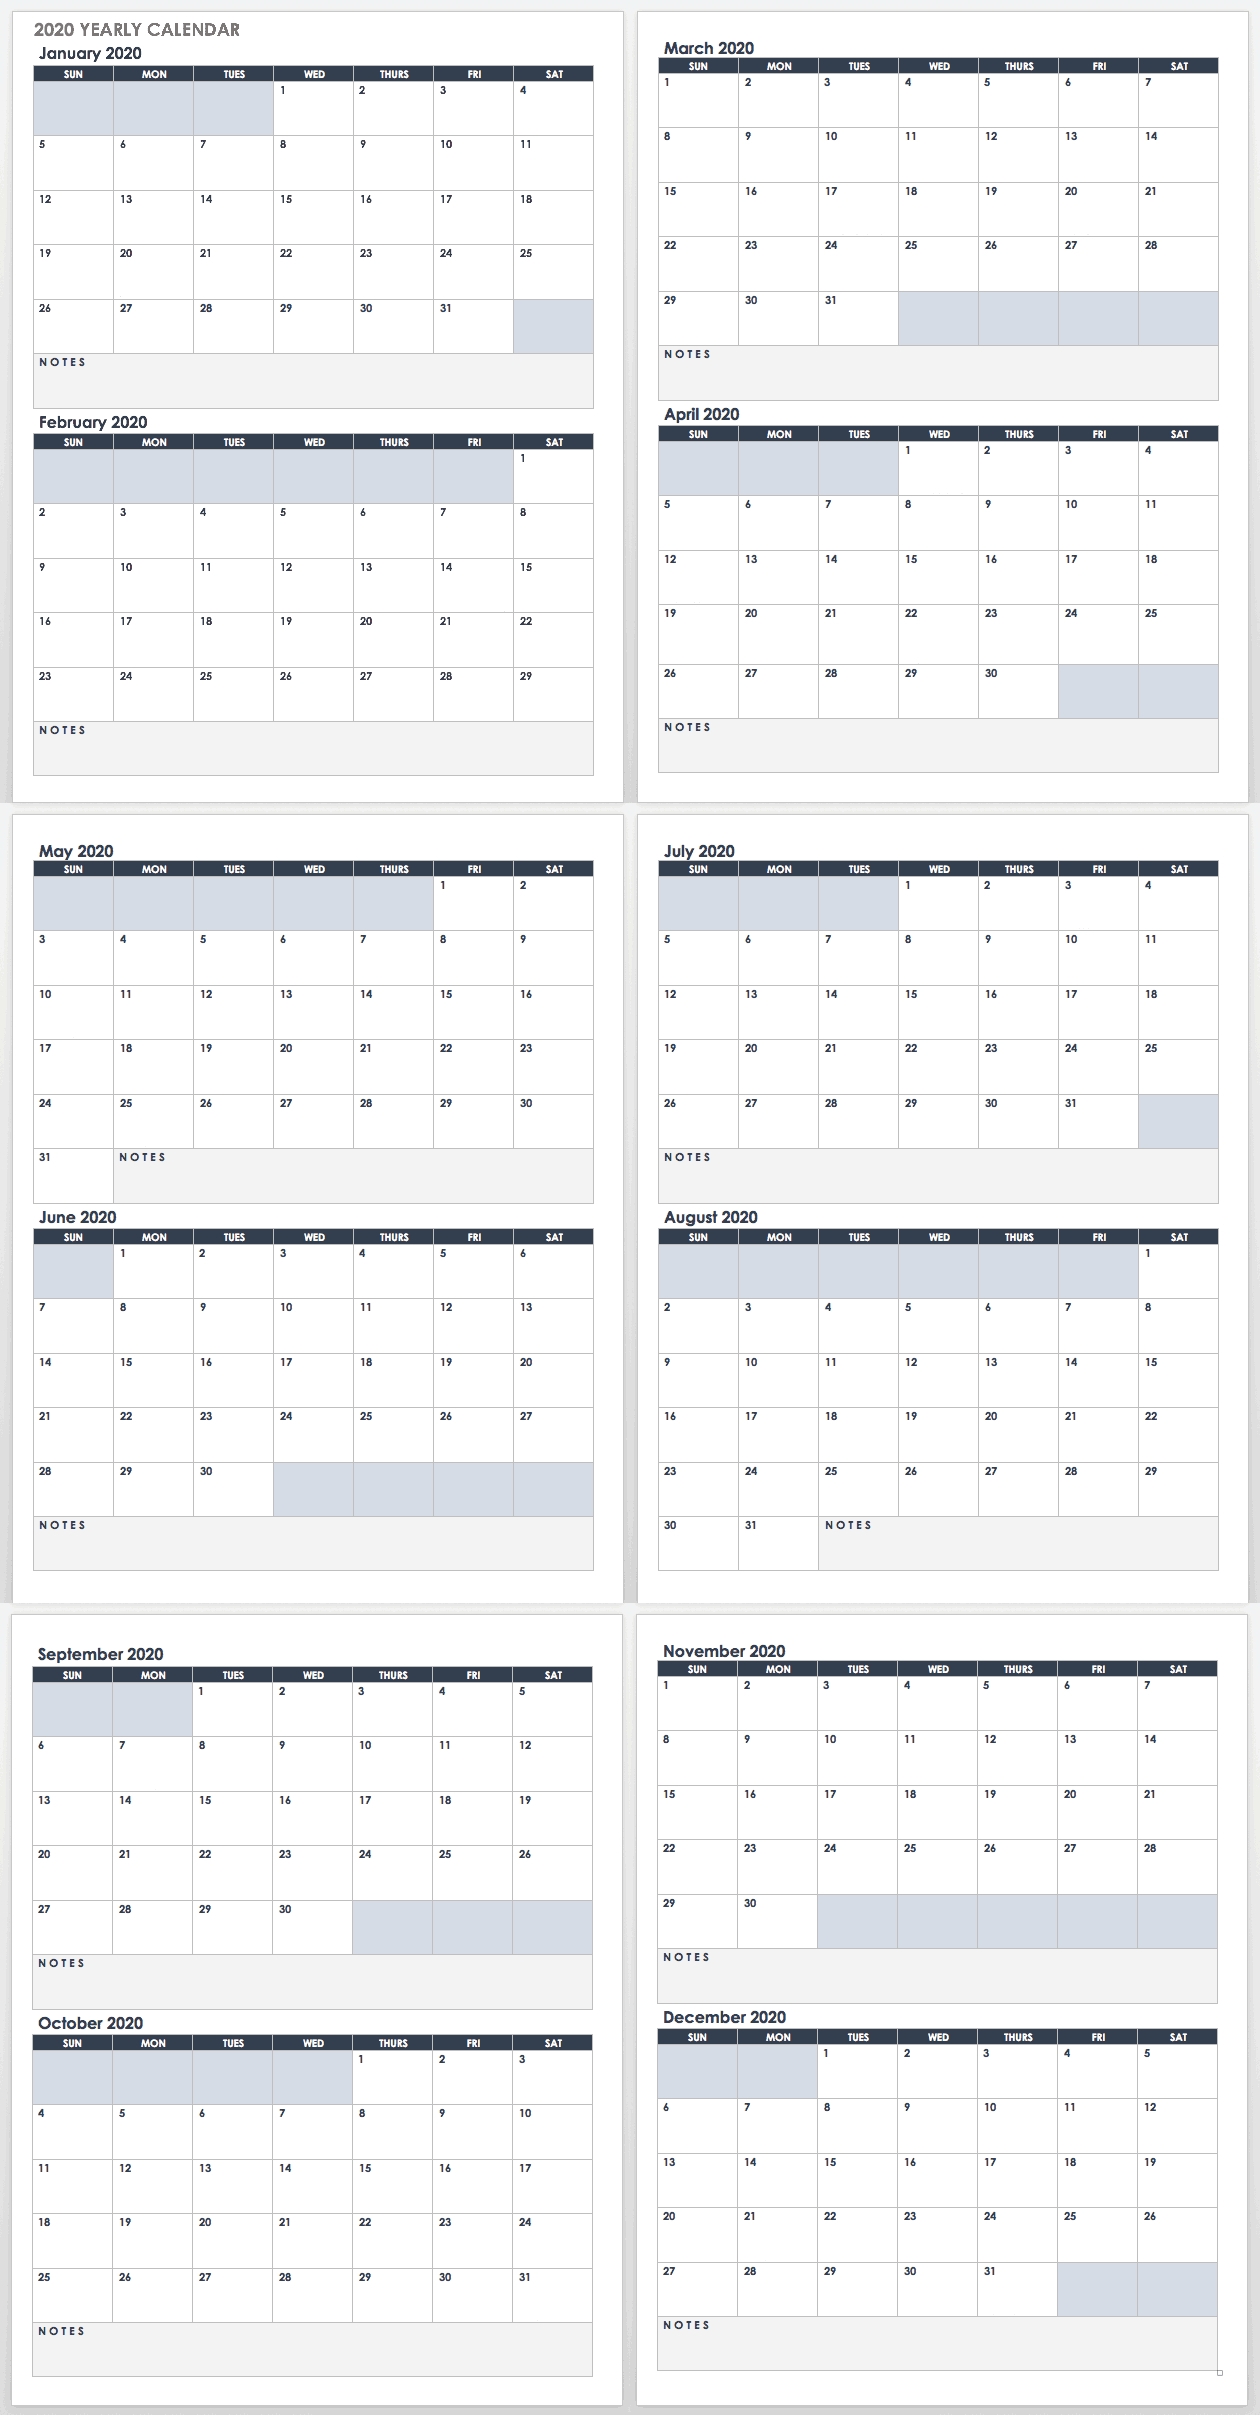 2020 Employee Attendance Calendar Free | Calendar For Planning for Employeee Attendance Calendar For 2020